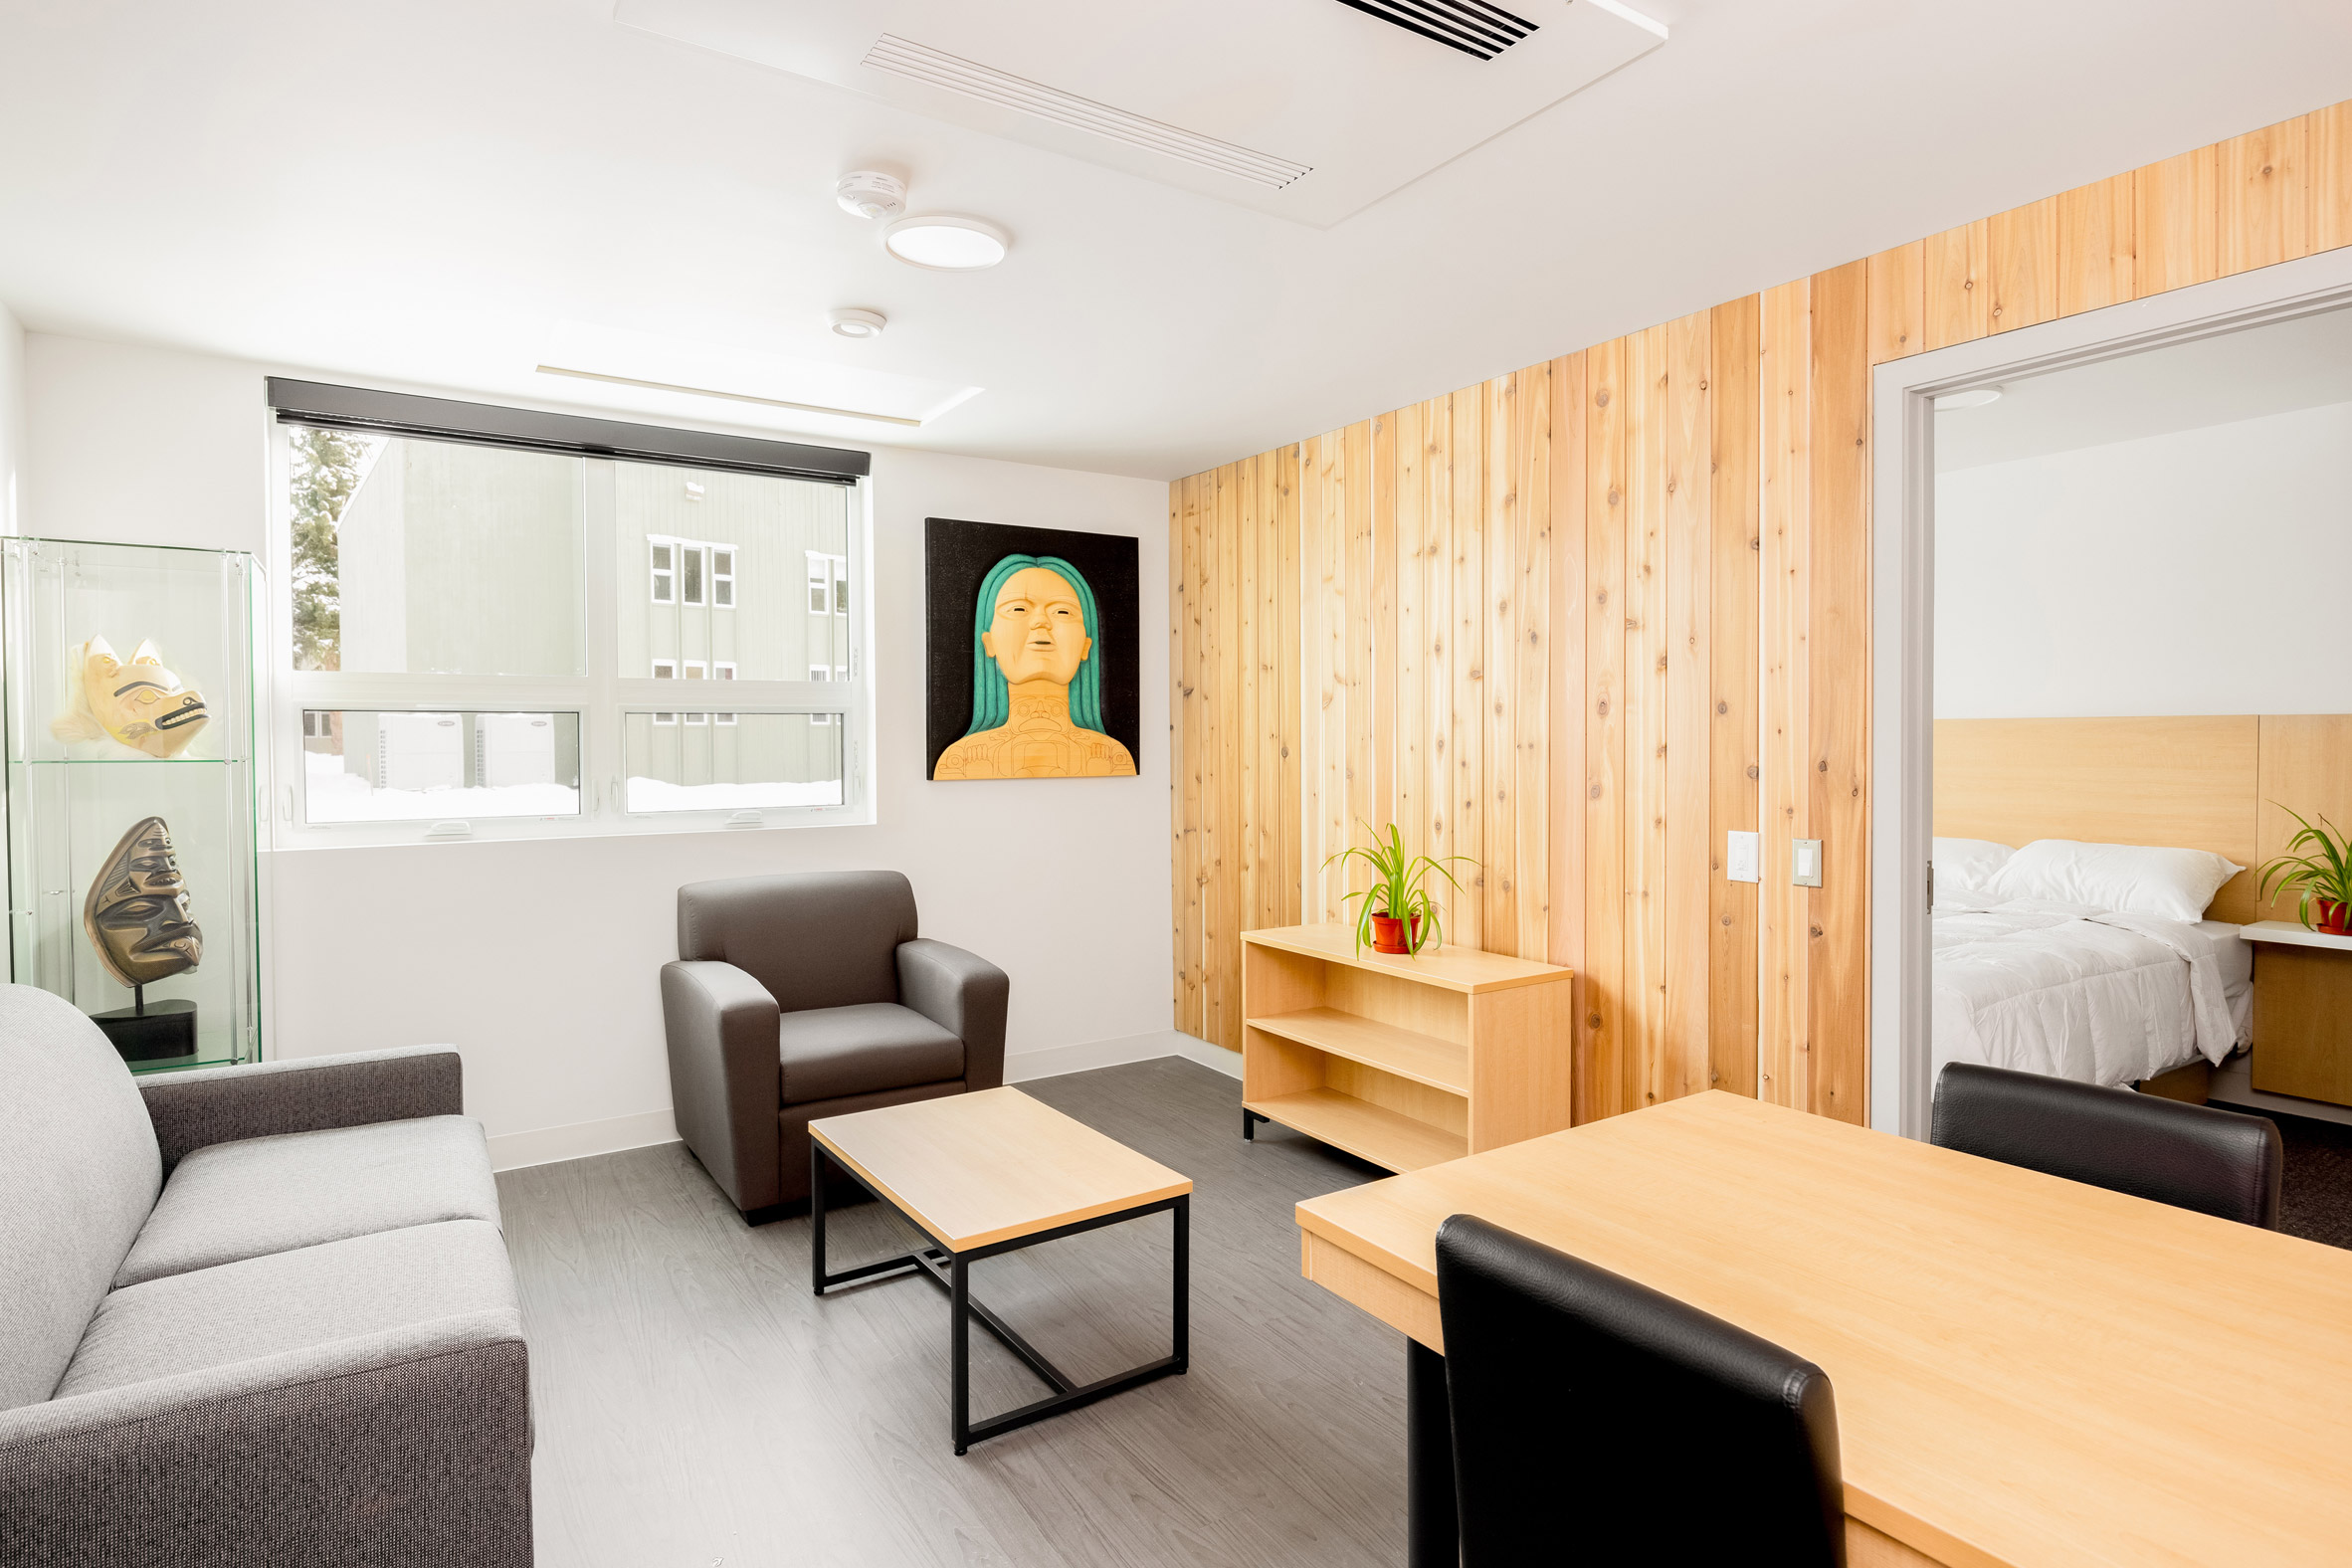 Suite with cedar walls